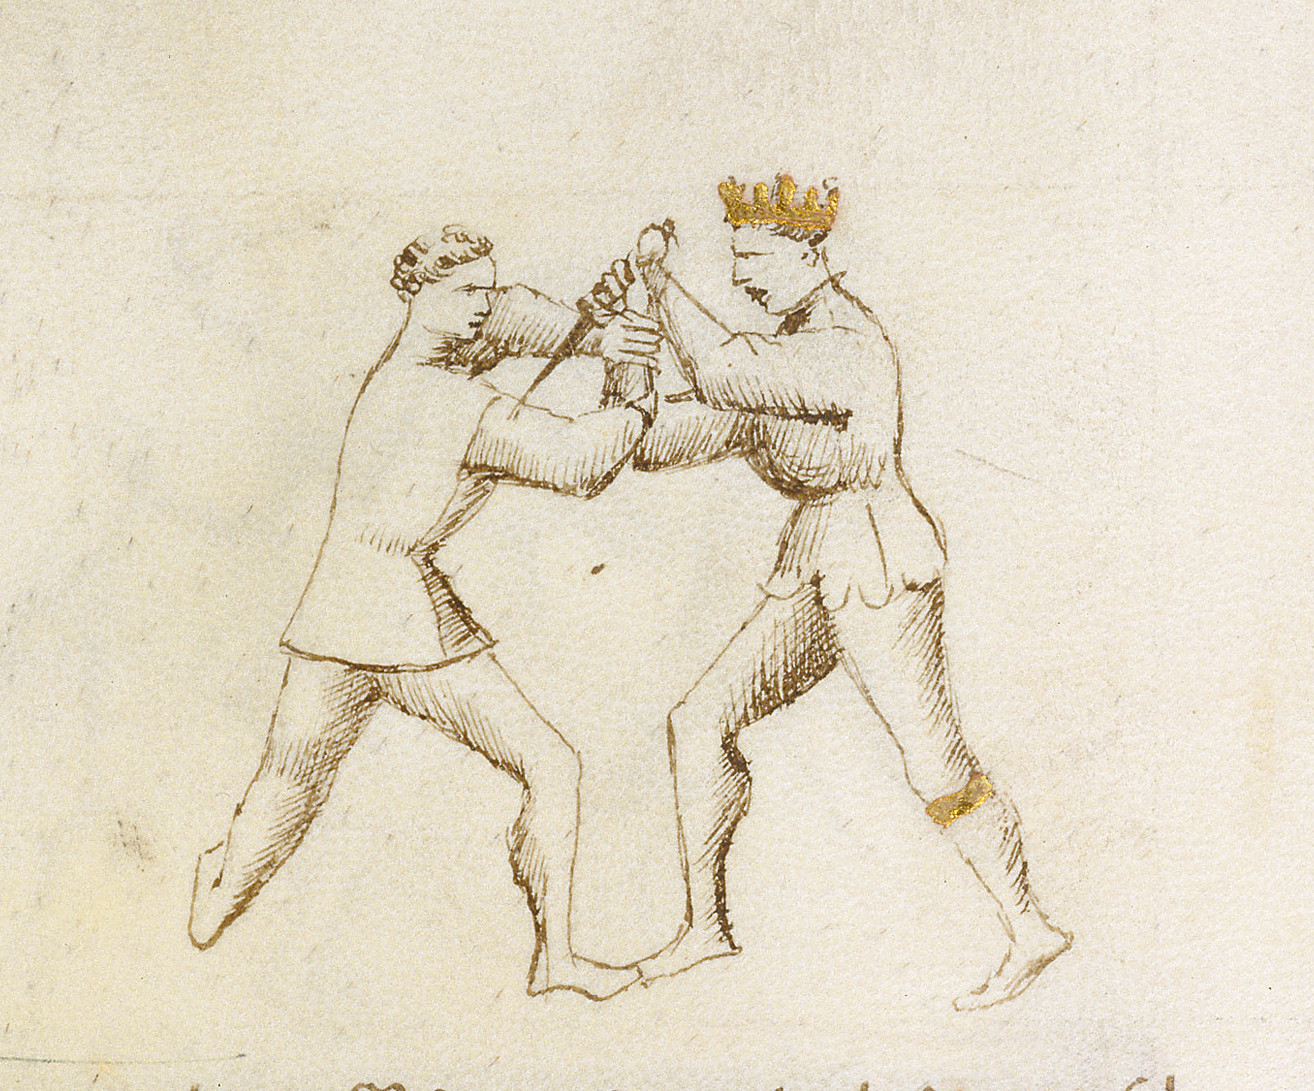 immagine tratta dal fior di battaglia raffigurante zugadore e magistro remedio alle prese con un gioco di daga